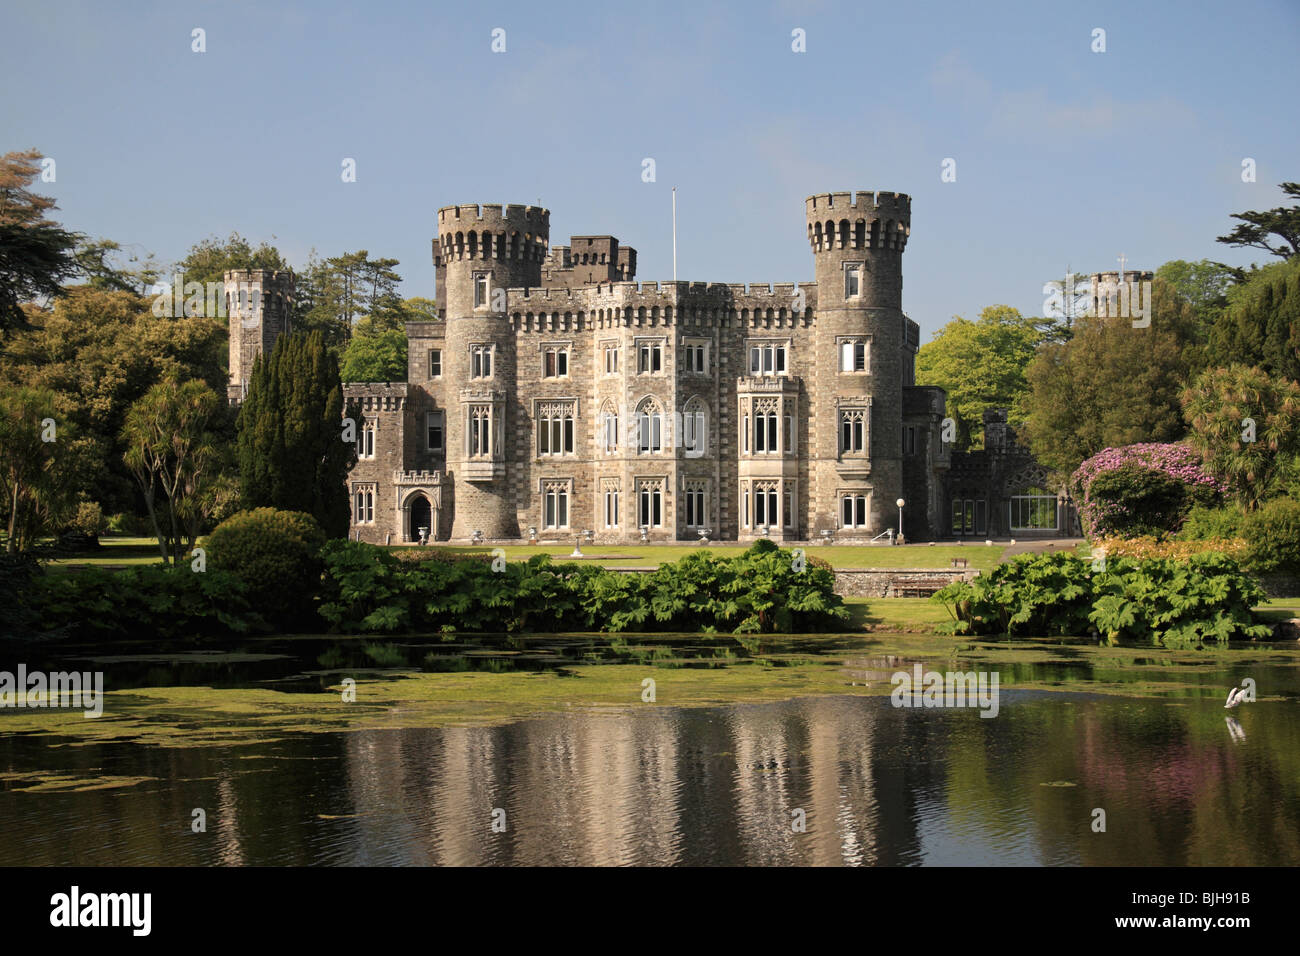 Wunderschöne Anlage, Schloss & See Johnstown Castle, Co. Wexford, Irland. Stockfoto